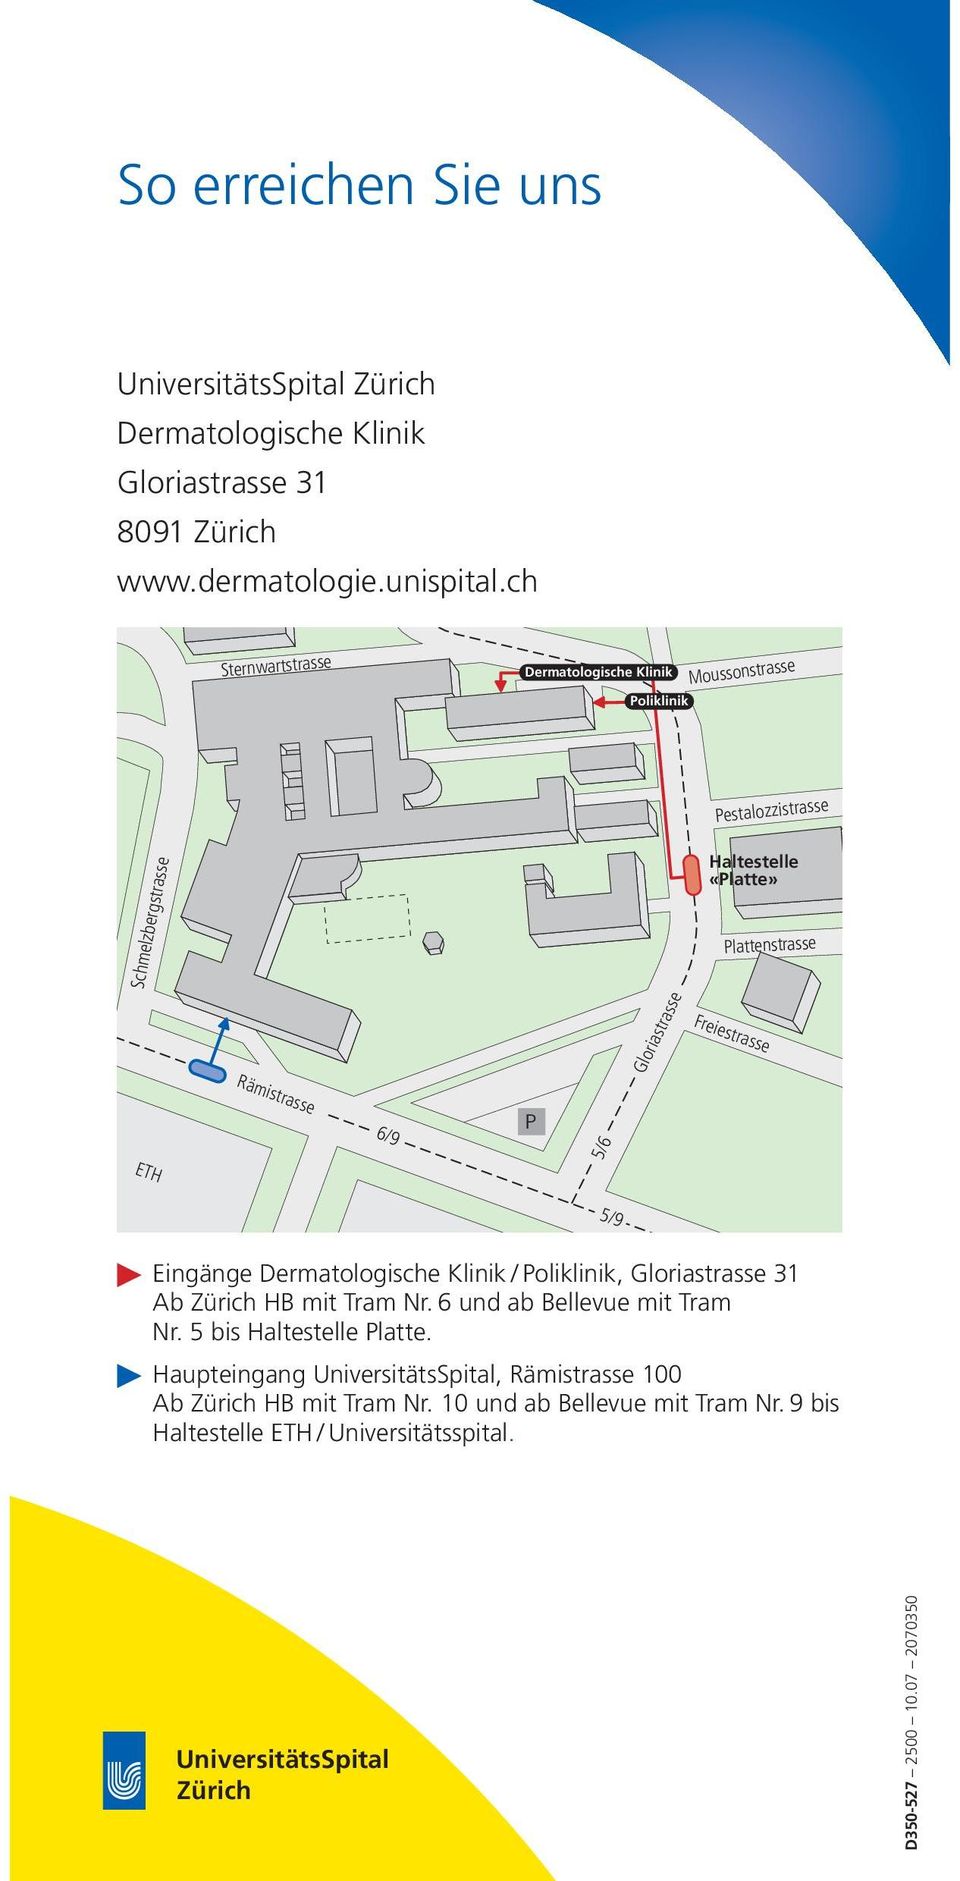 6/9 5/9 P 5/6 ETH Eingänge Dermatologische Klinik / Poliklinik, Gloriastrasse 31 Ab Zürich HB mit Tram Nr. 6 und ab Bellevue mit Tram Nr. 5 bis Haltestelle Platte.